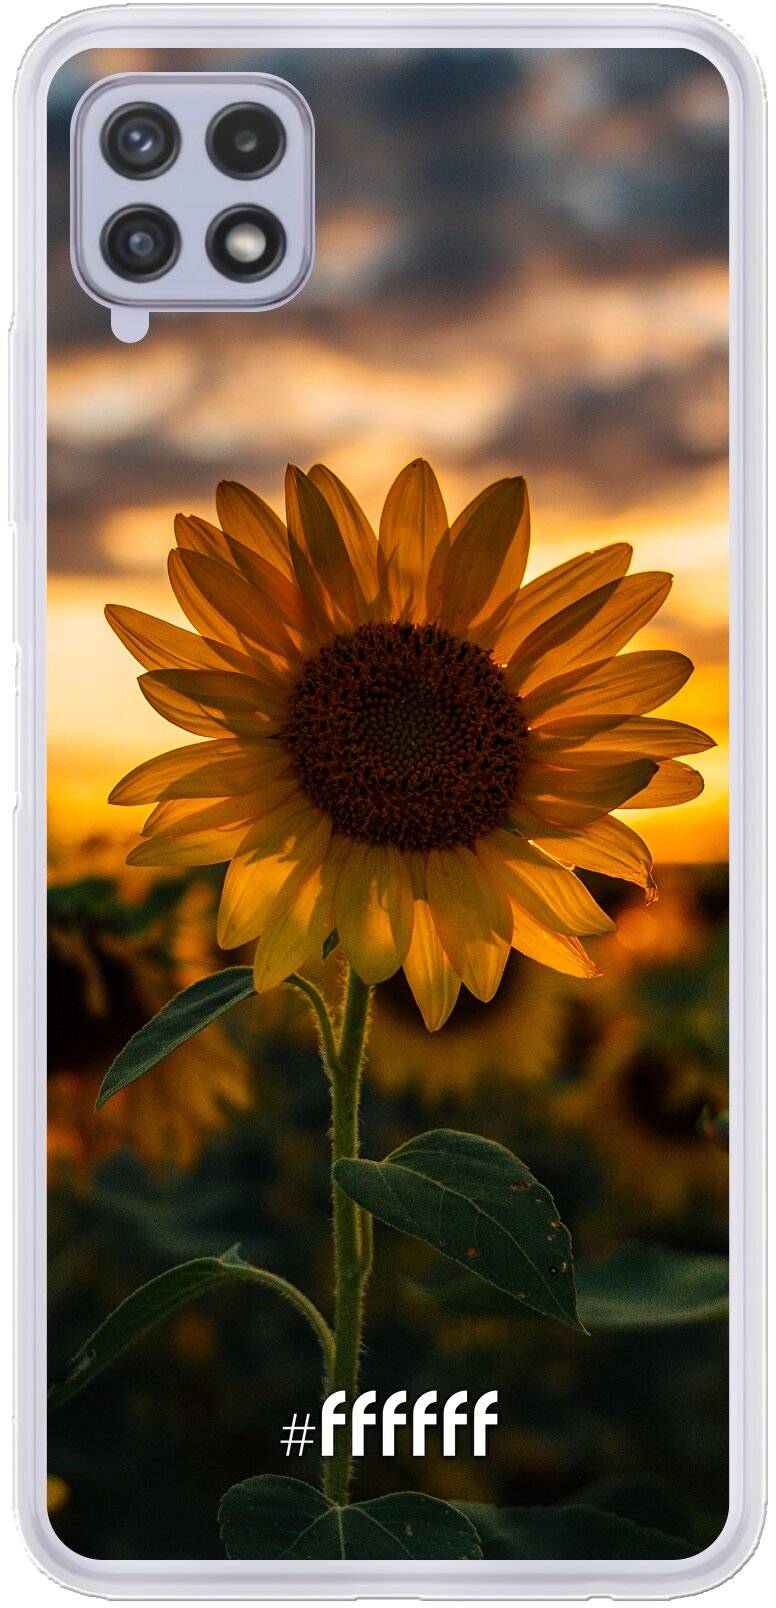 Sunset Sunflower Galaxy A22 4G